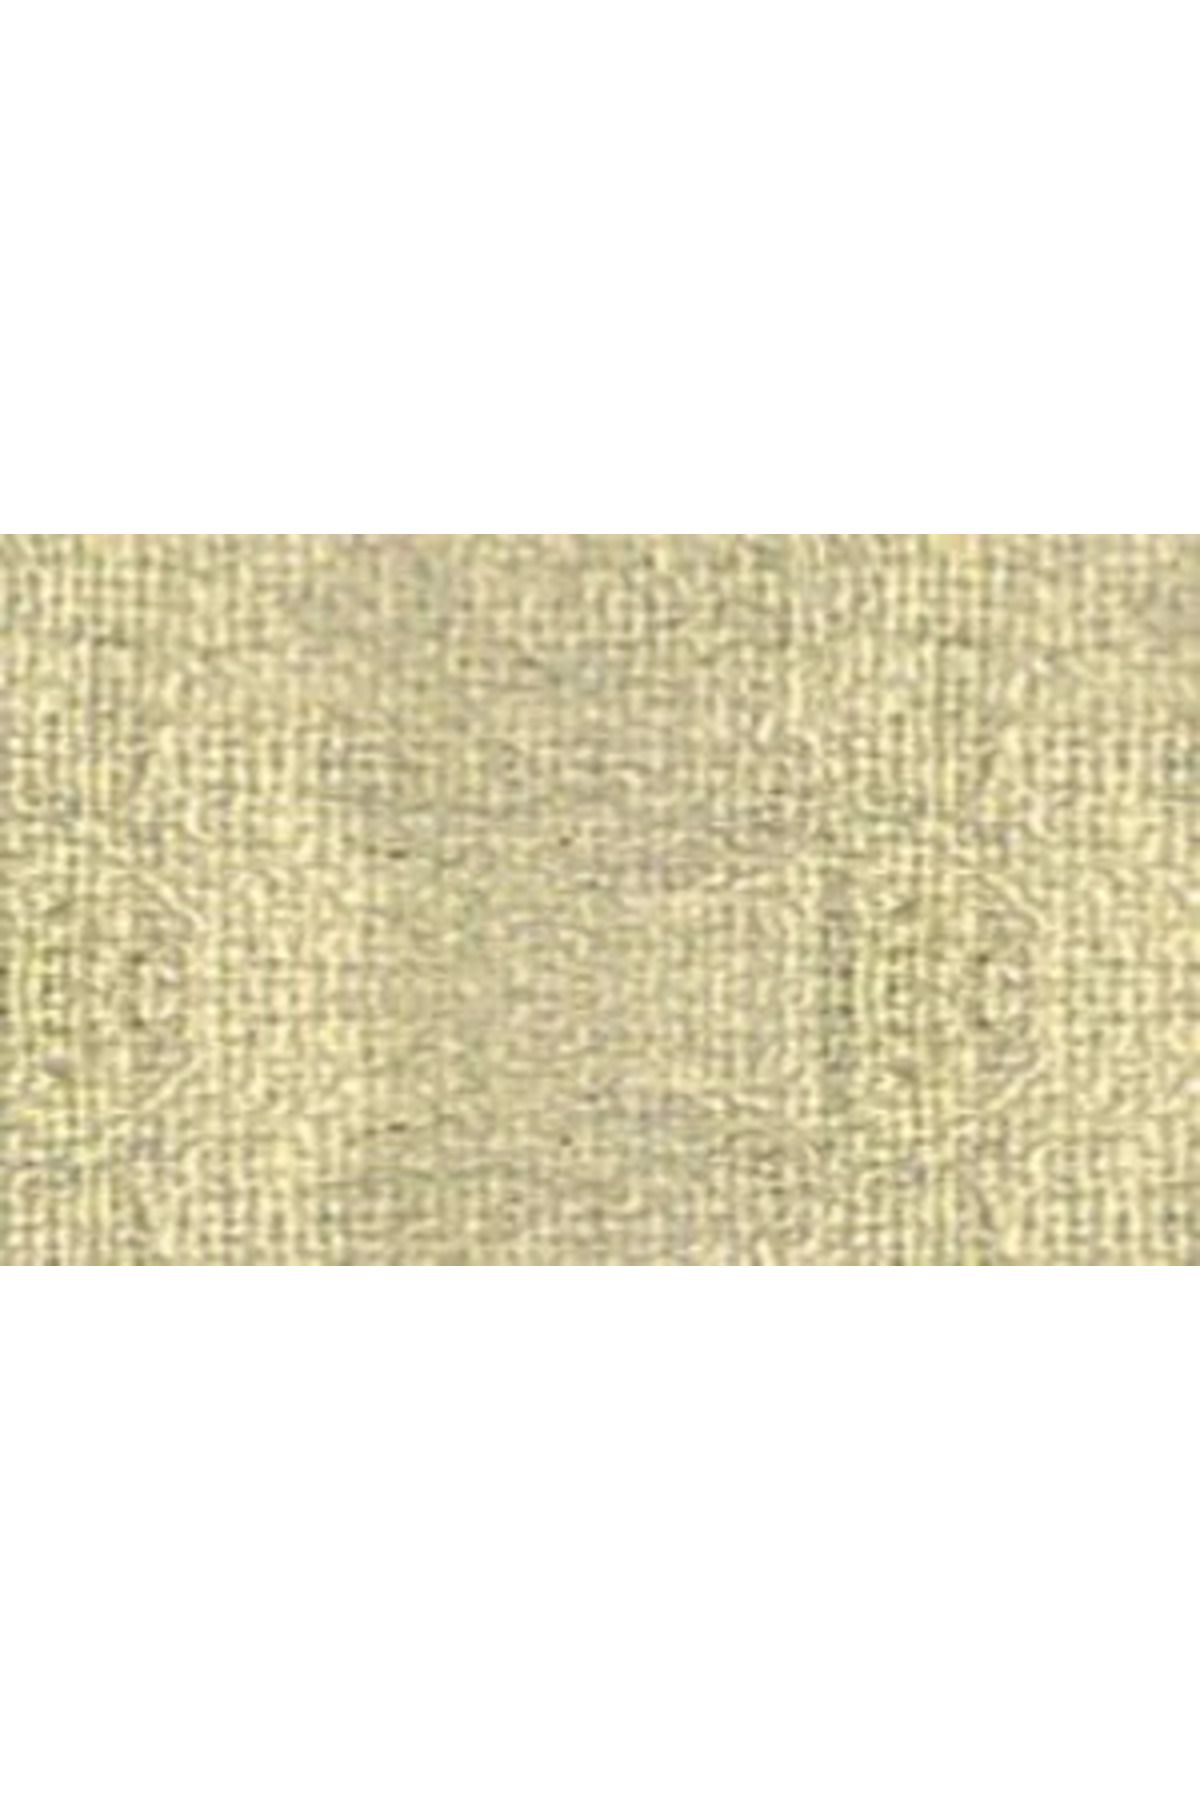 Pebeo Setacolor Opak Kumaş Boyası Yanar Döner 97 Pearl Gold